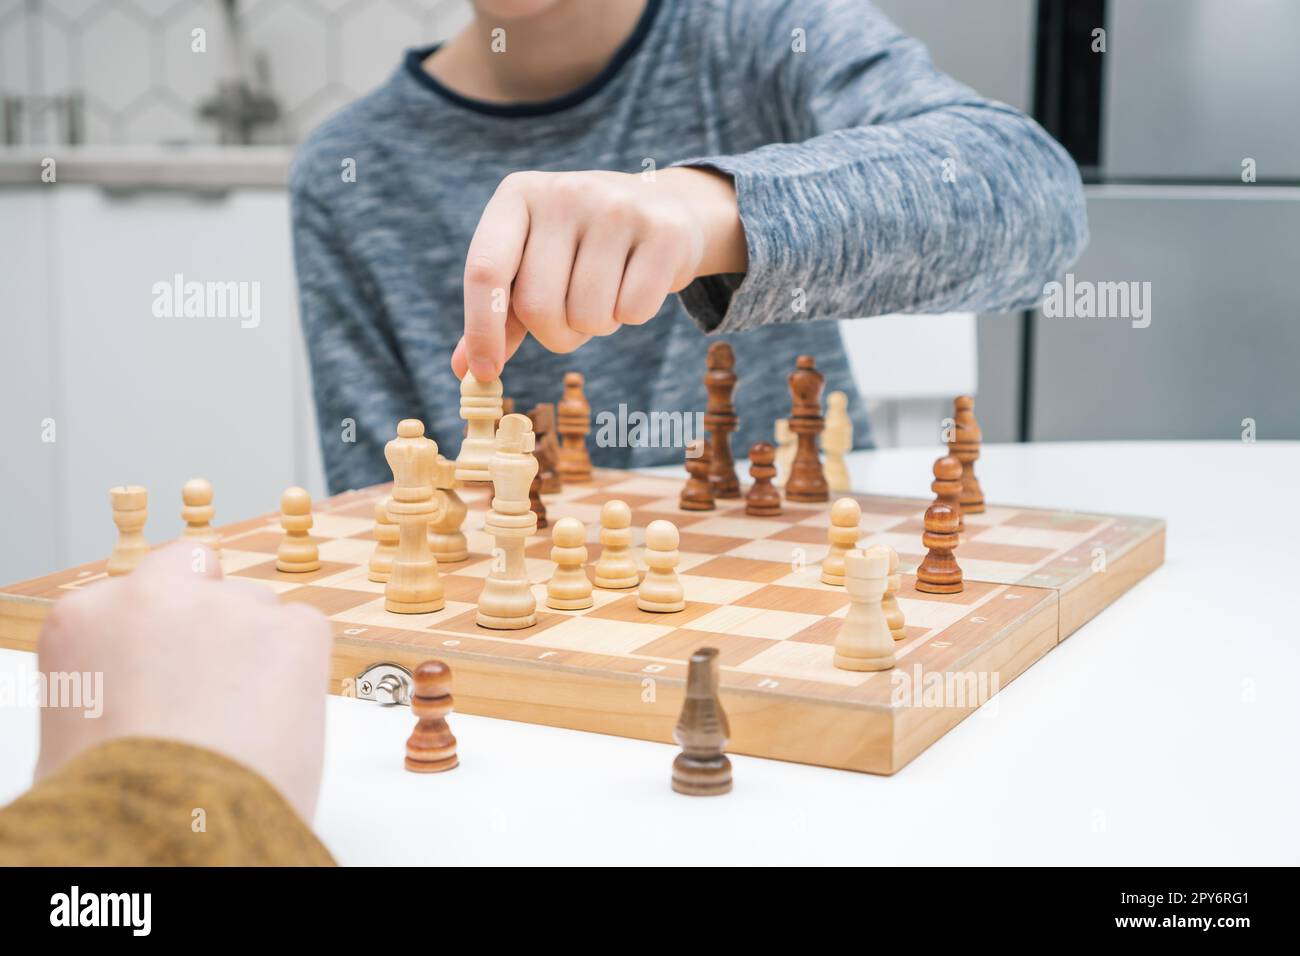 Les garçons jouent aux échecs assis à la table de cuisine. Main de l'enfant déplacer la figure blanche sur l'échiquier en bois. Stratégie de jeu, tactiques. Banque D'Images